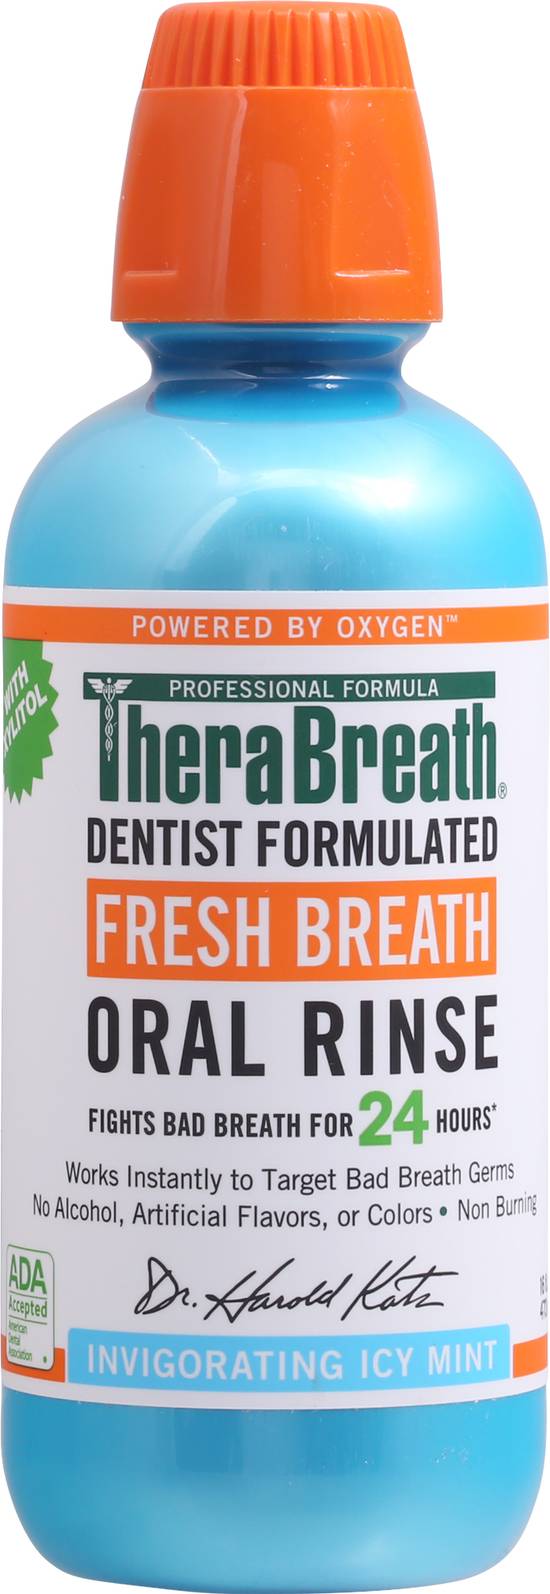 Therabreath Fresh Breath Oral Rinse (16 fl oz)